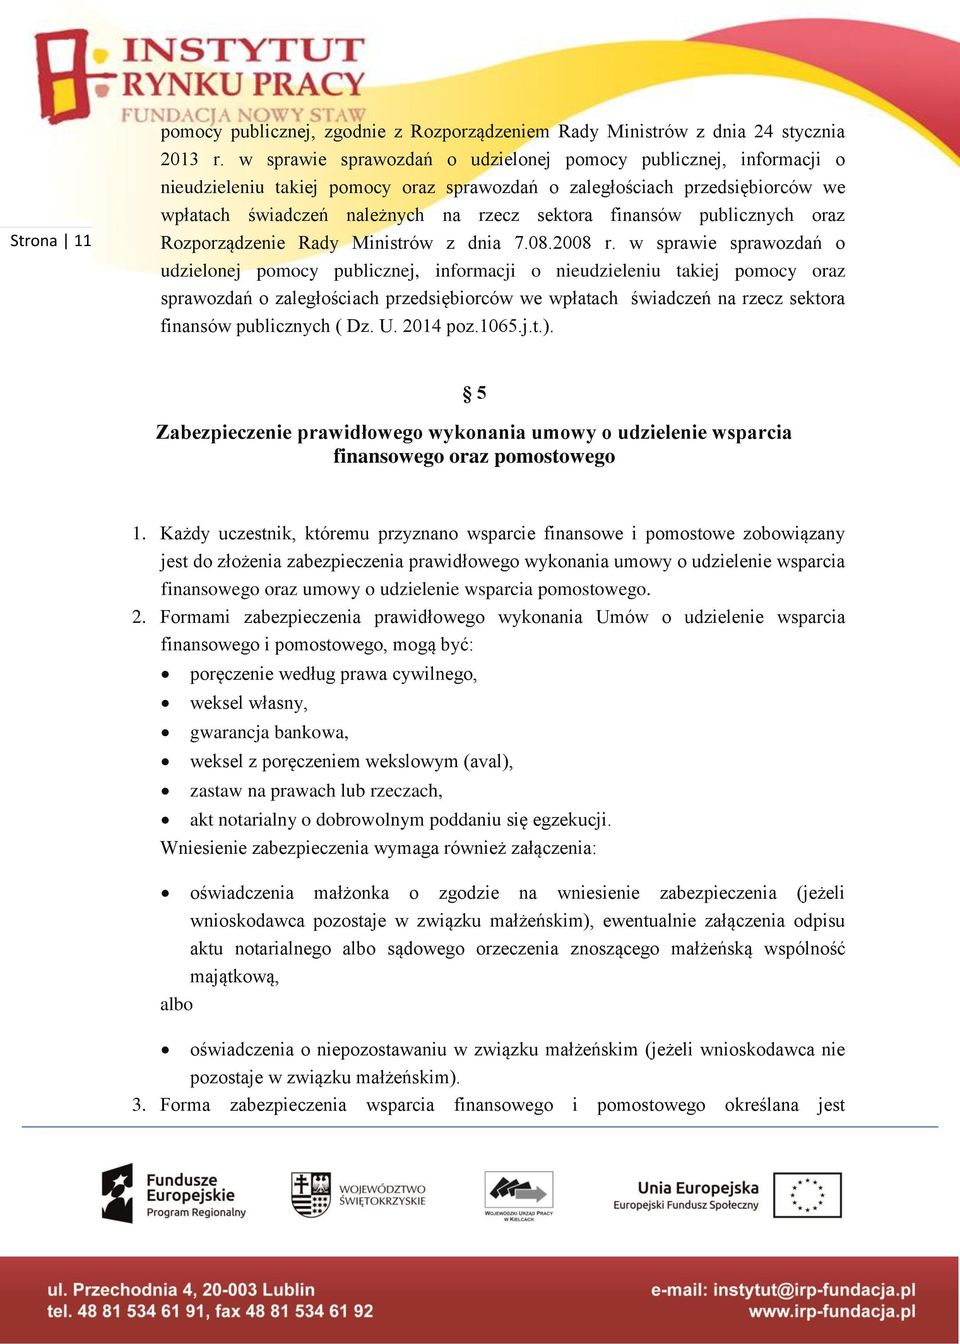 publicznych oraz Rozporządzenie Rady Ministrów z dnia 7.08.2008 r.